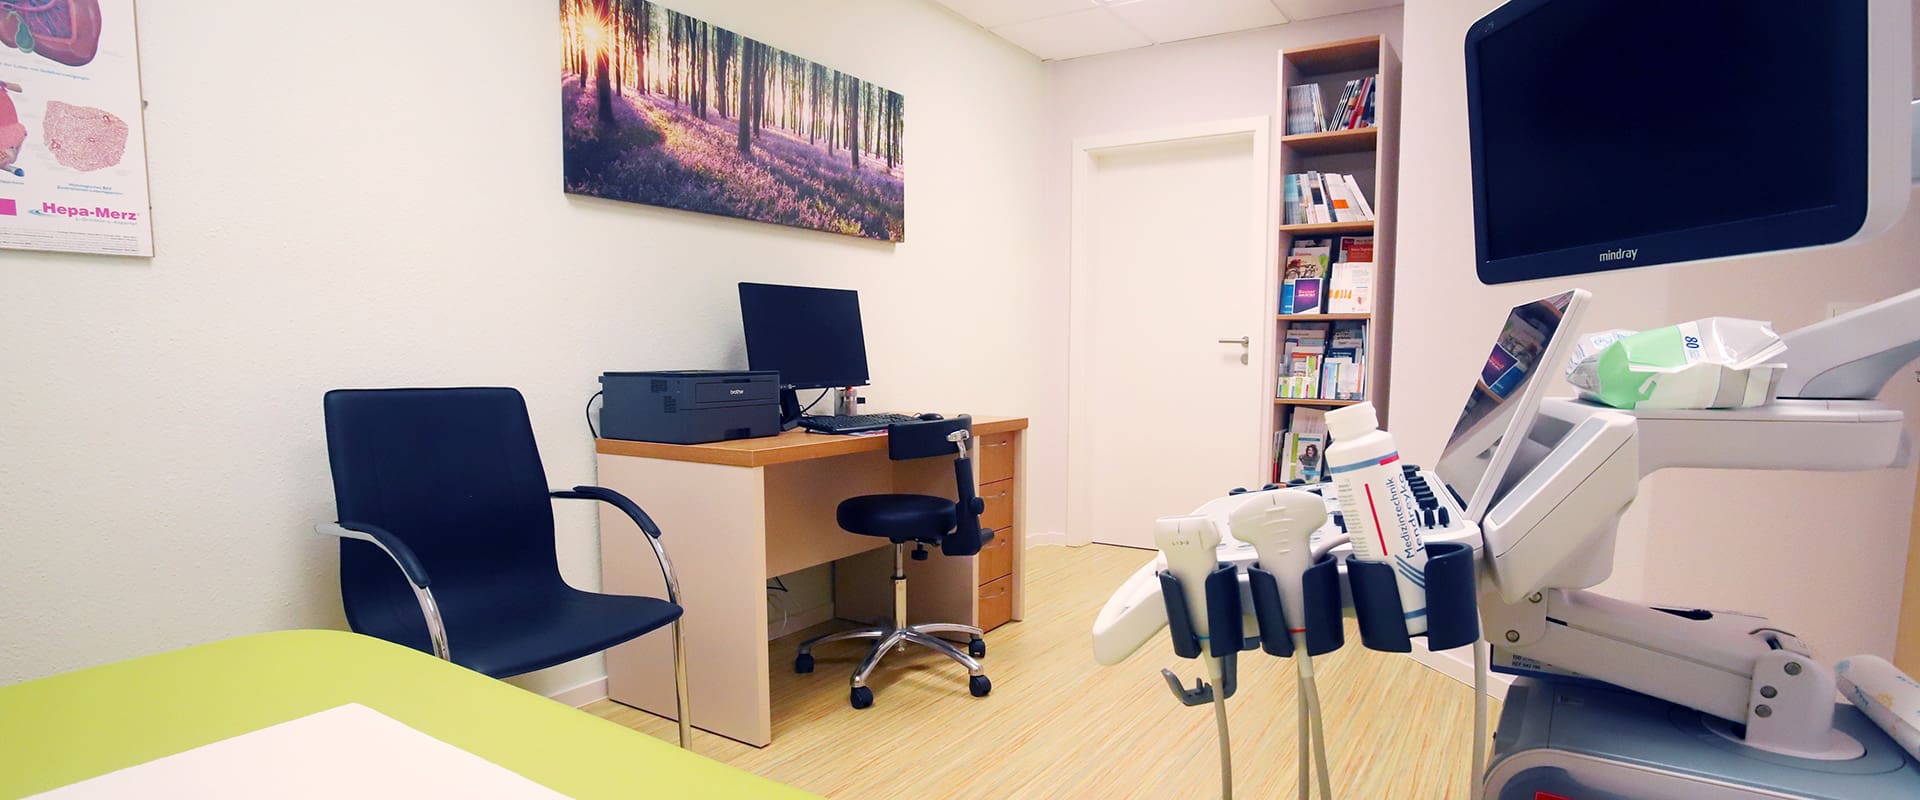 Referenz Praxis für Allgemeinmedizin Altenburger Blick von einer Liege neben einem Ultrashallgerät in einem Sprechzimmer in Richtung Schreibtisch